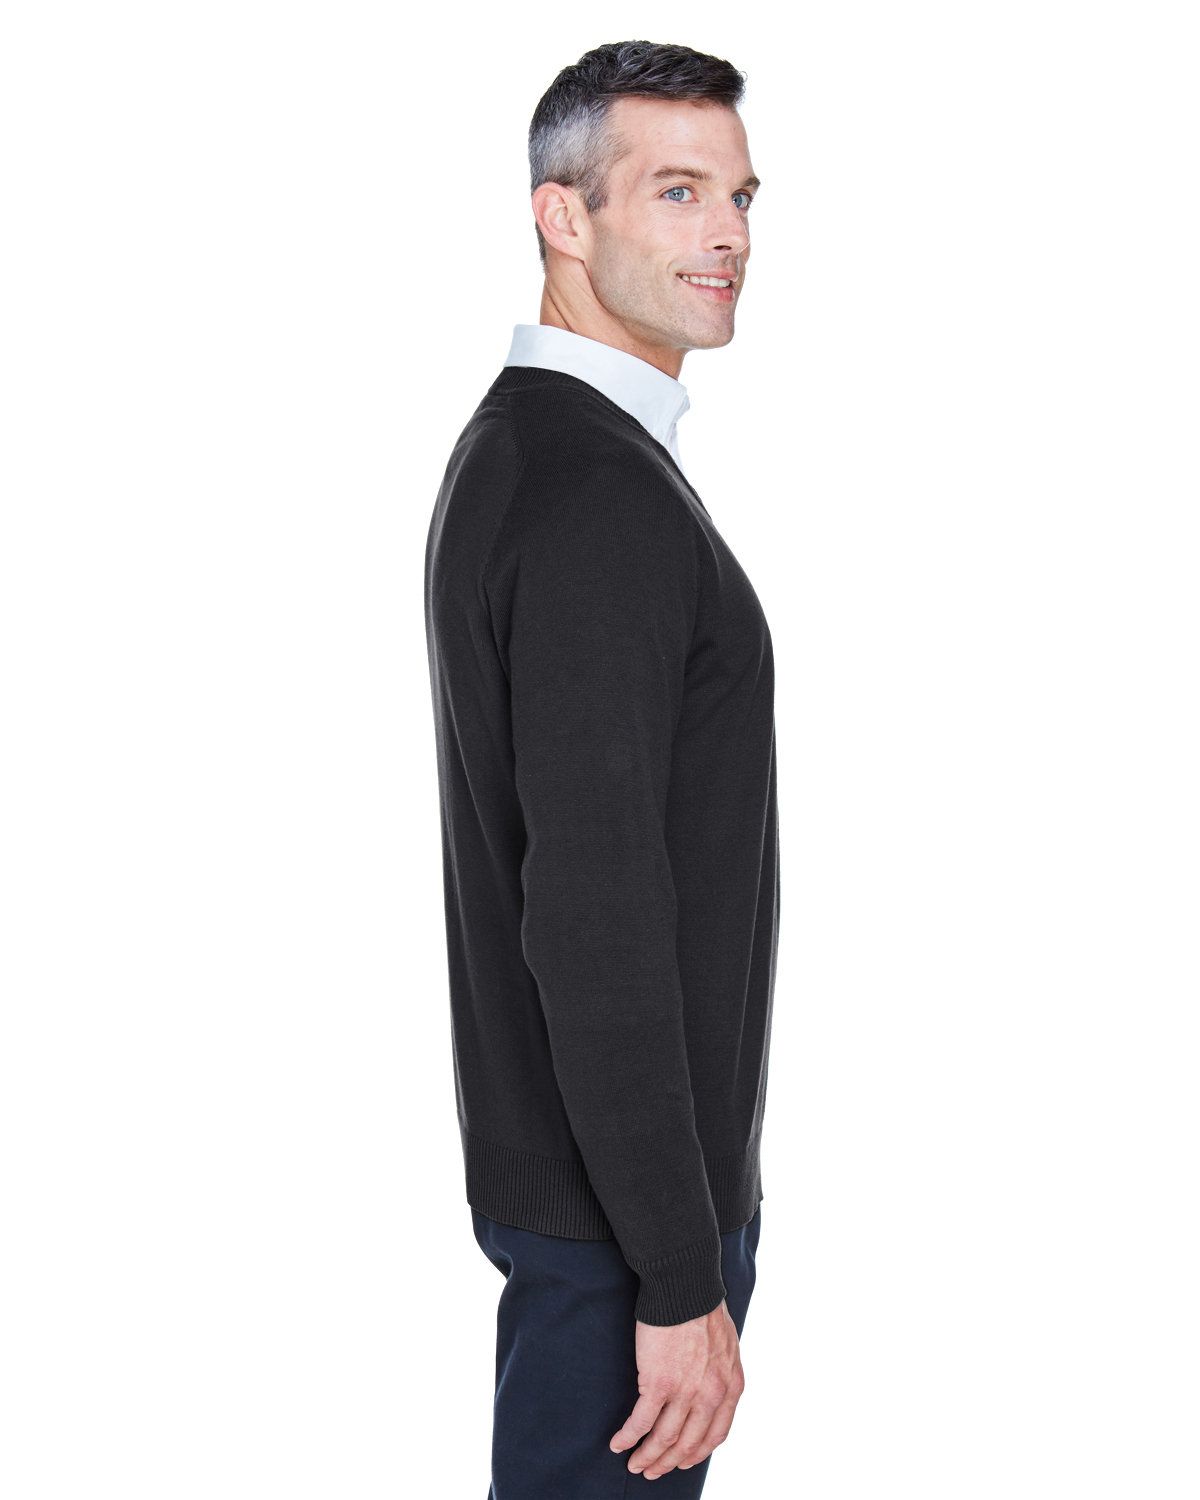 'Devon & Jones D475 Men's V-Neck Sweater'